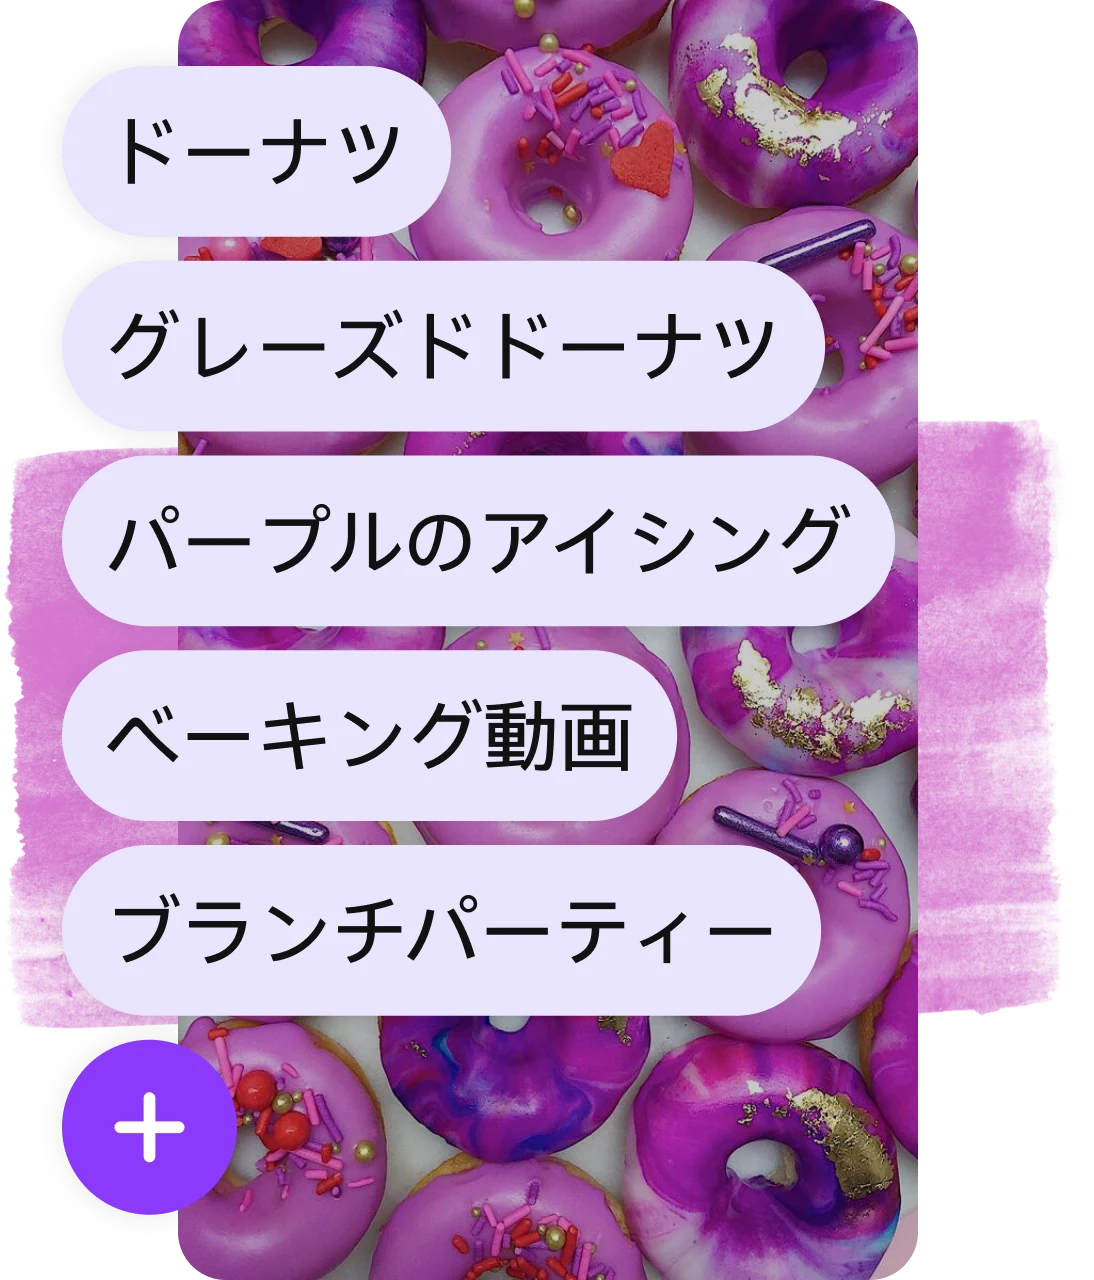 紫色のドーナツのピンにオーバーレイされたタグのリストと紫色の「追加」ボタン